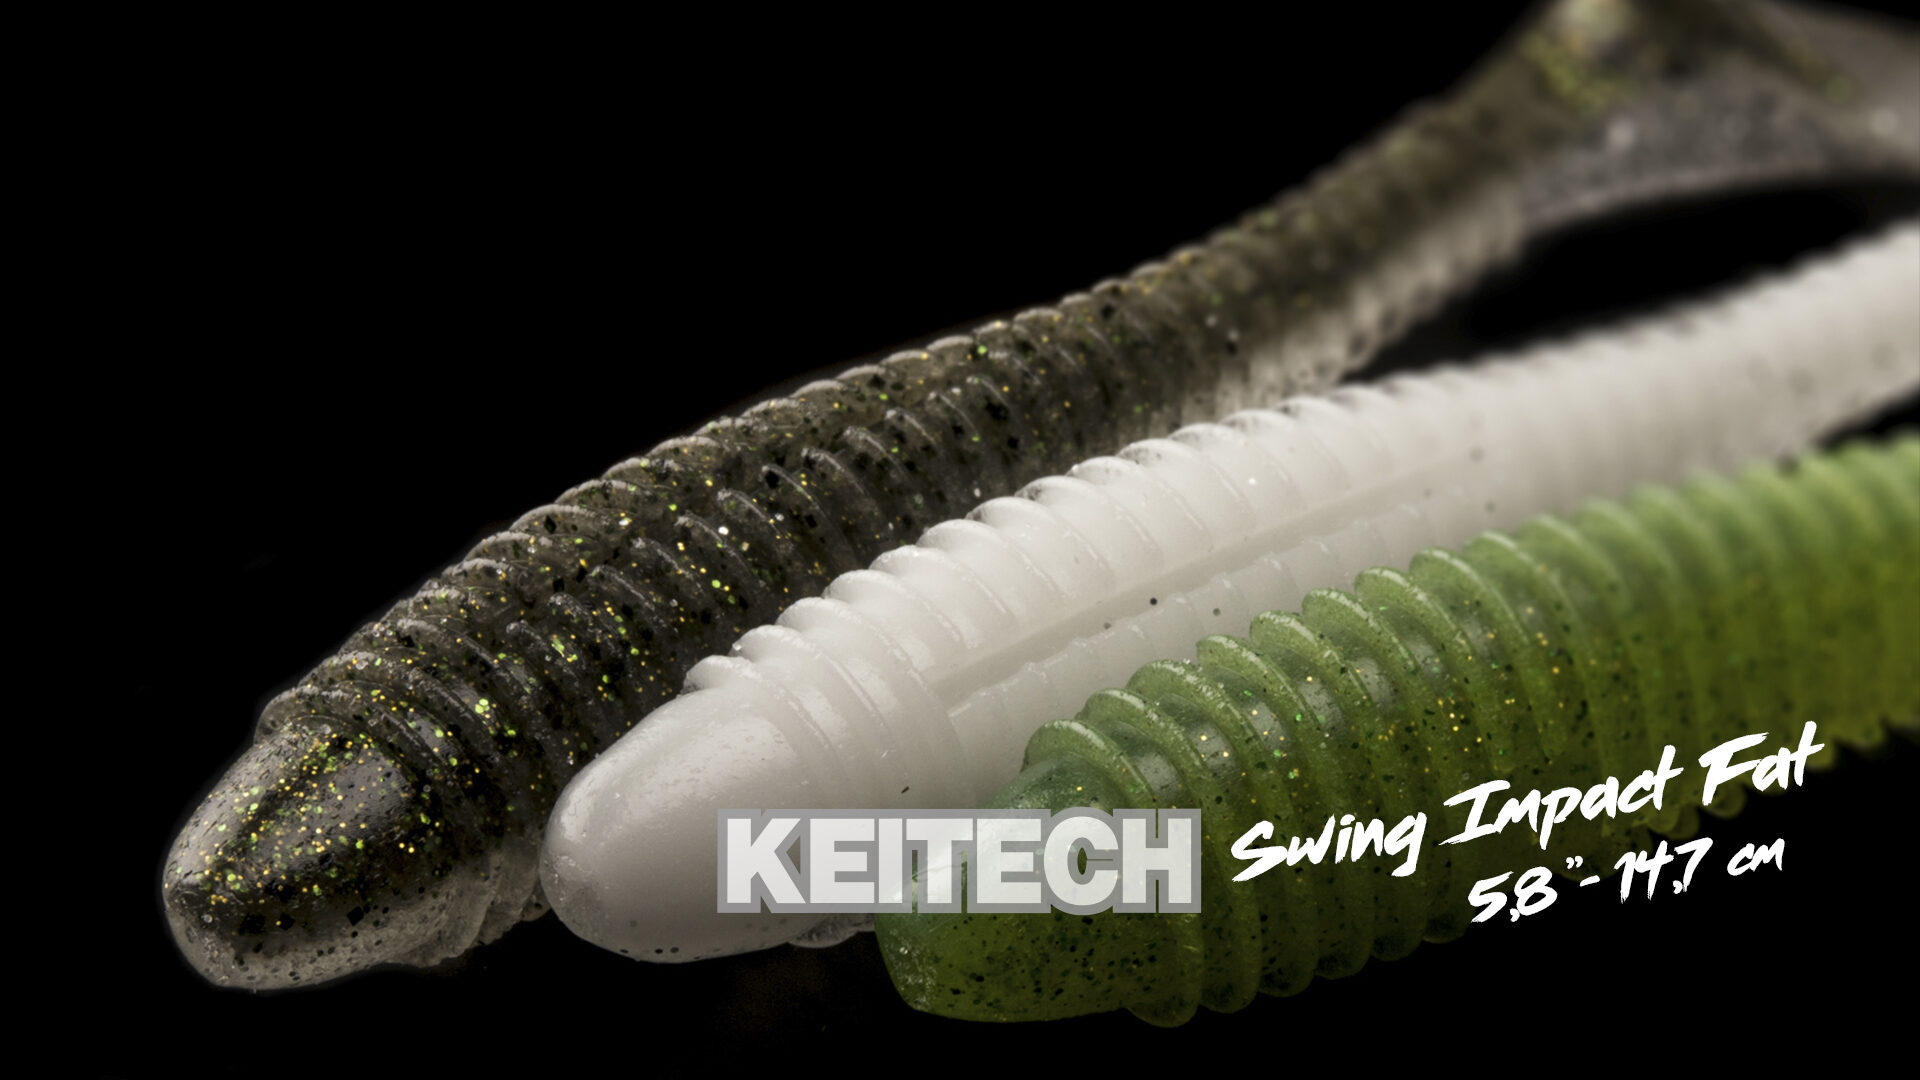 Leurre Keitech Swing Impact fat 5.8 – Way Of Fishing